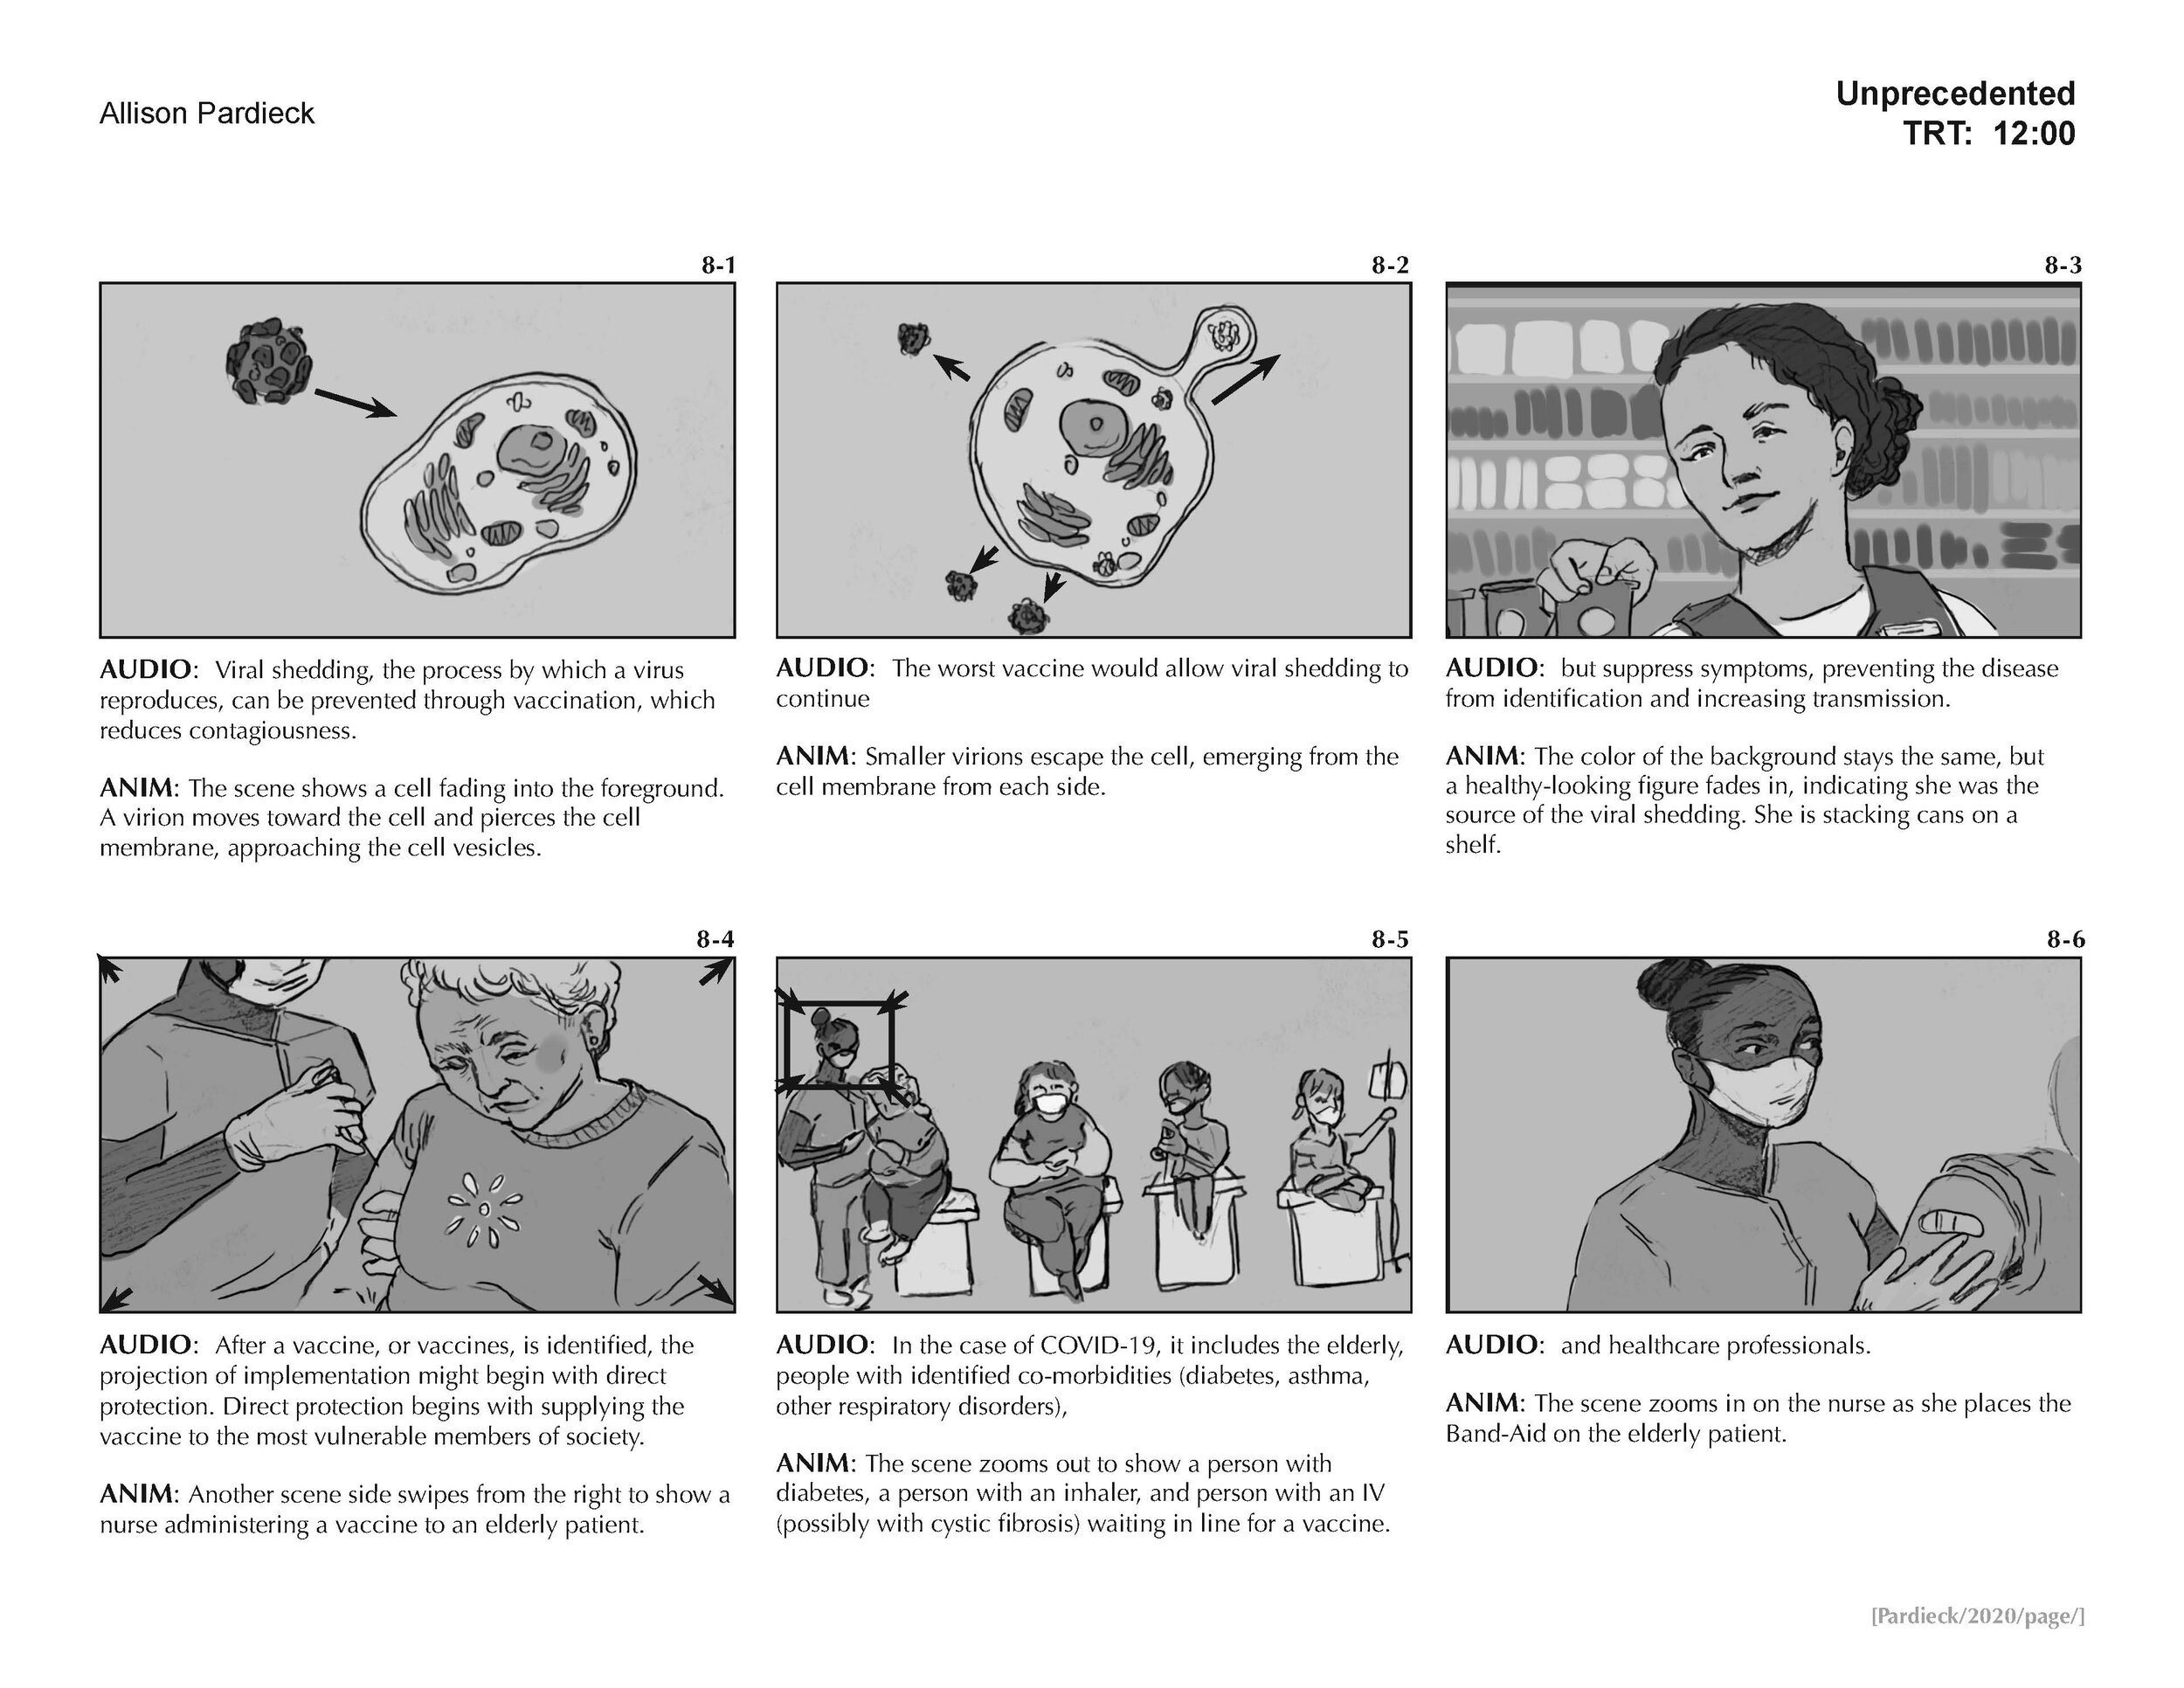 "Unprecedented" Storyboard (page 8)